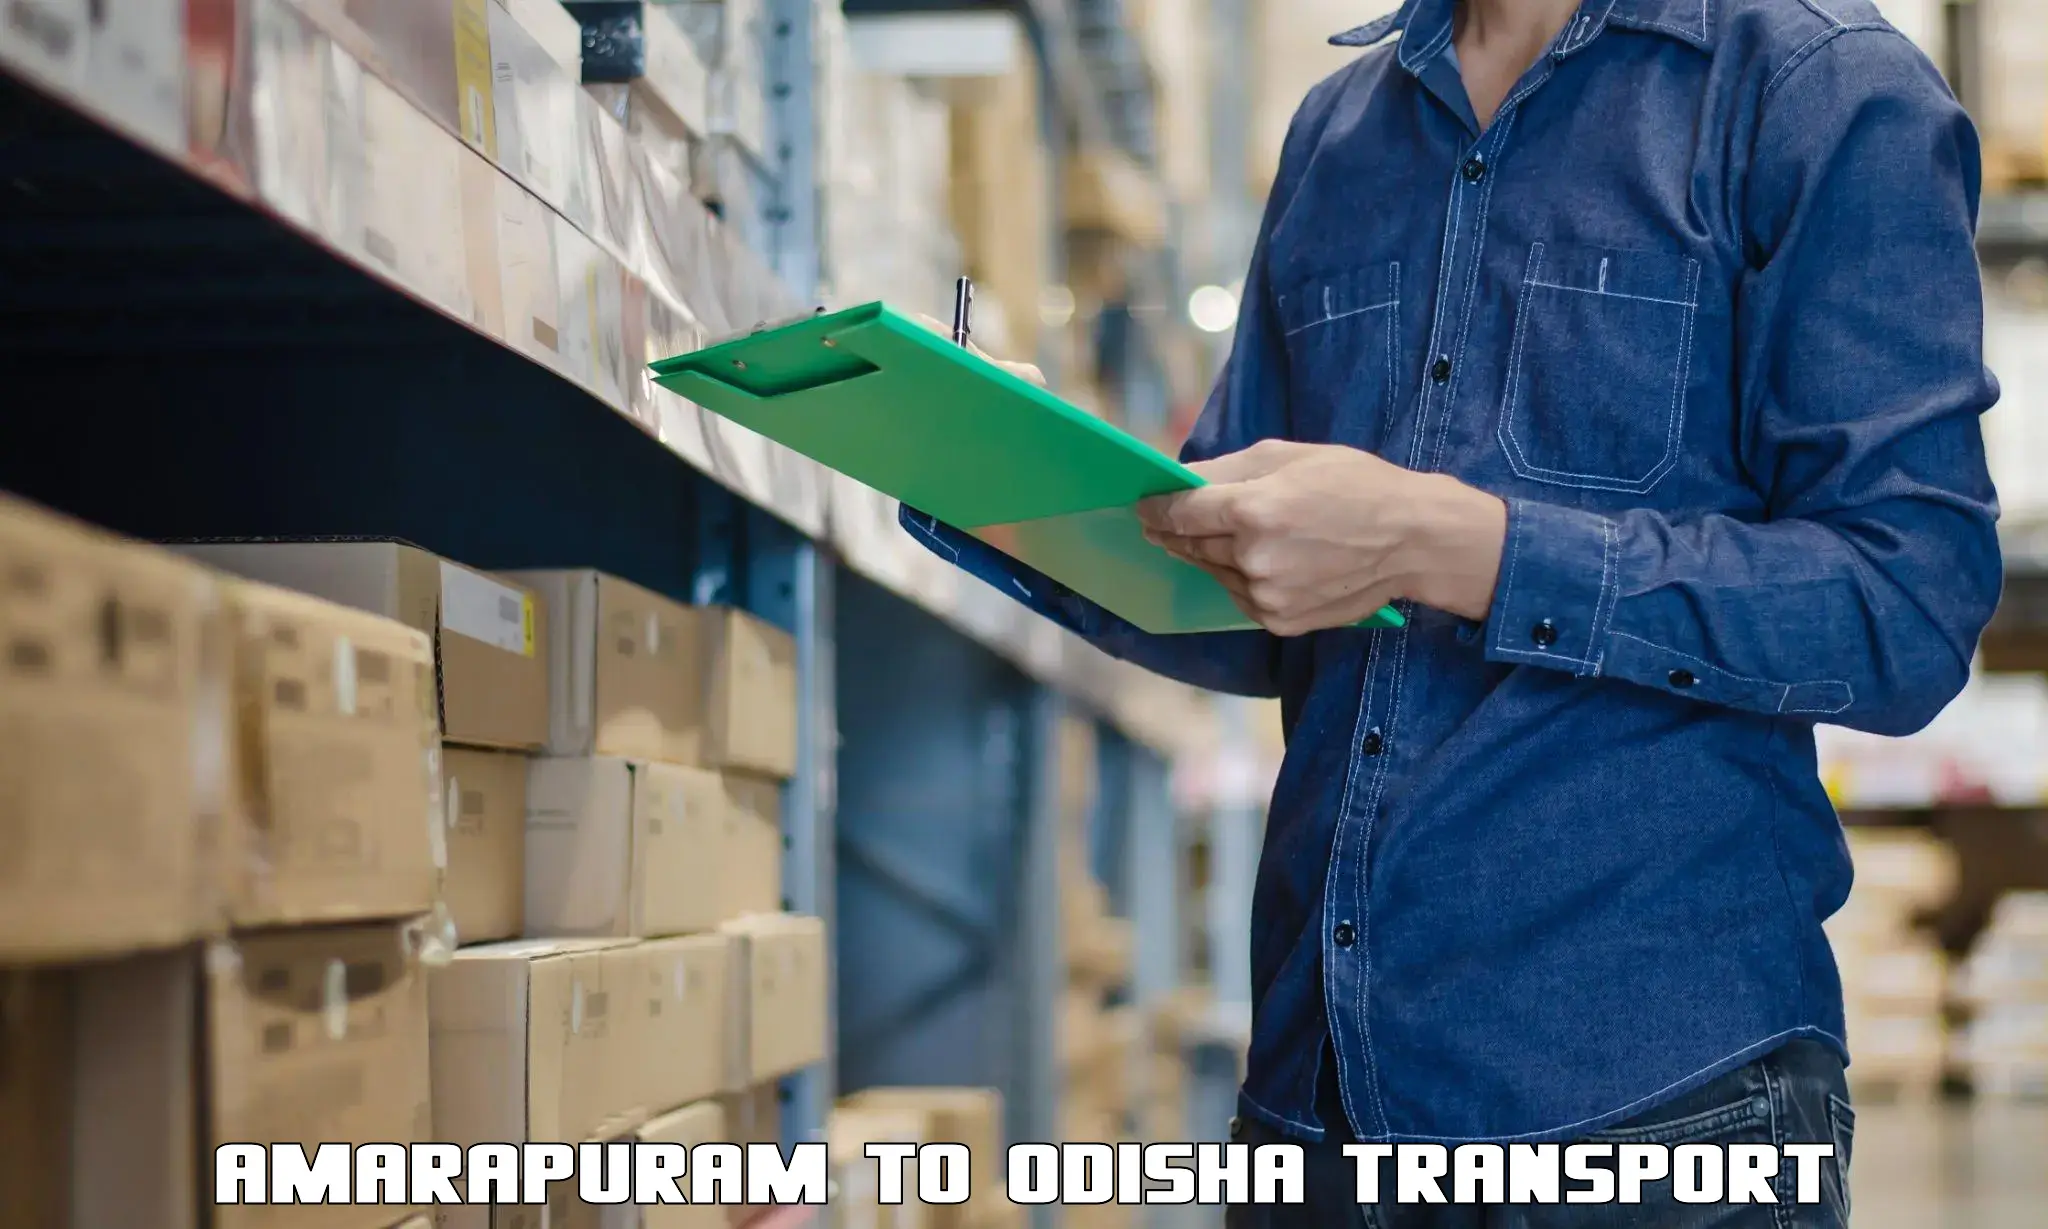 Container transport service Amarapuram to Adaspur